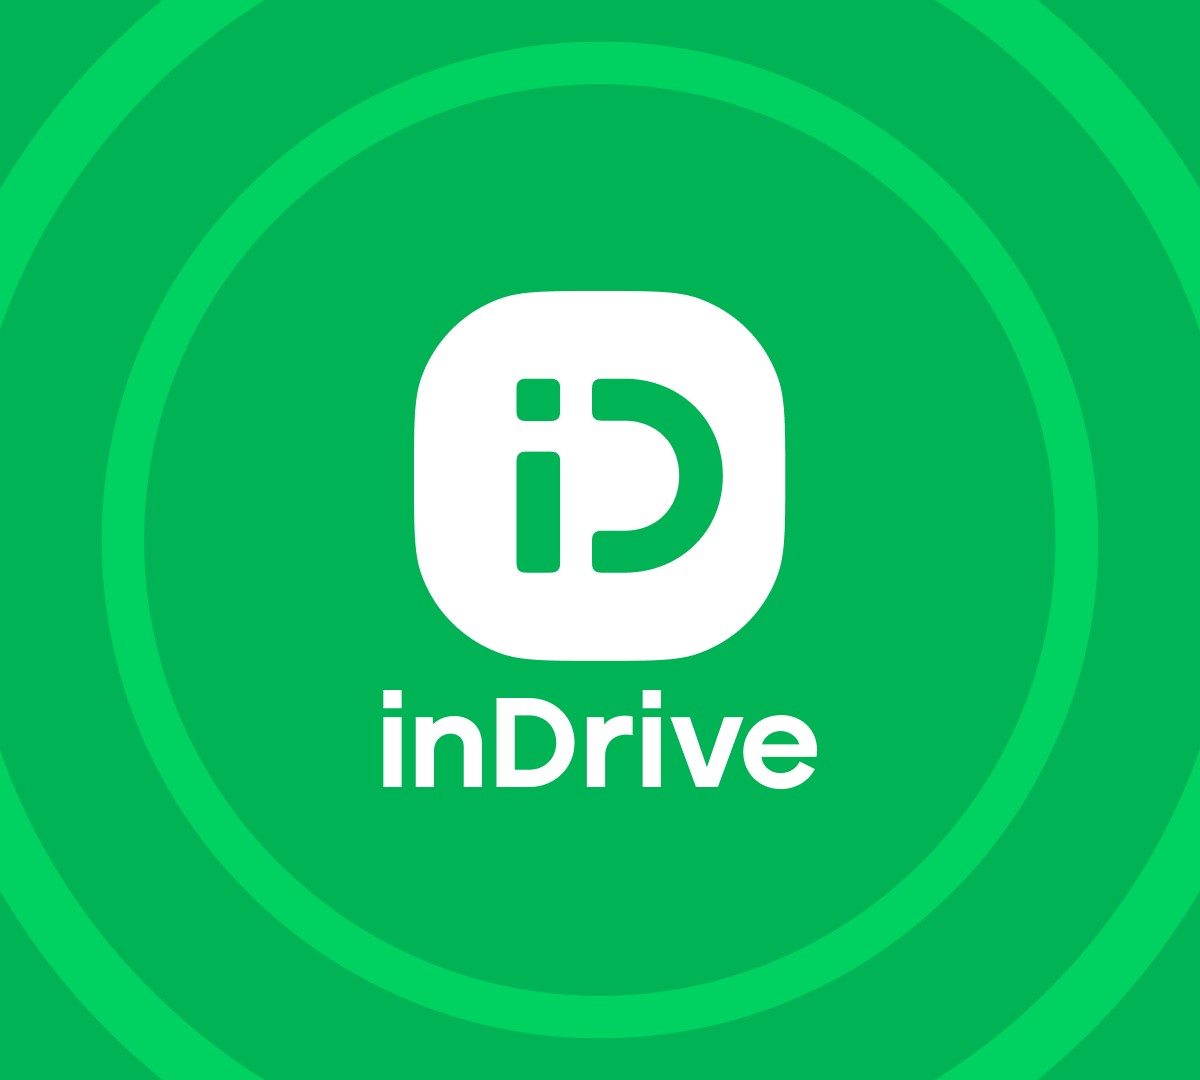 Quais cidades do Brasil possuem carros do inDrive?